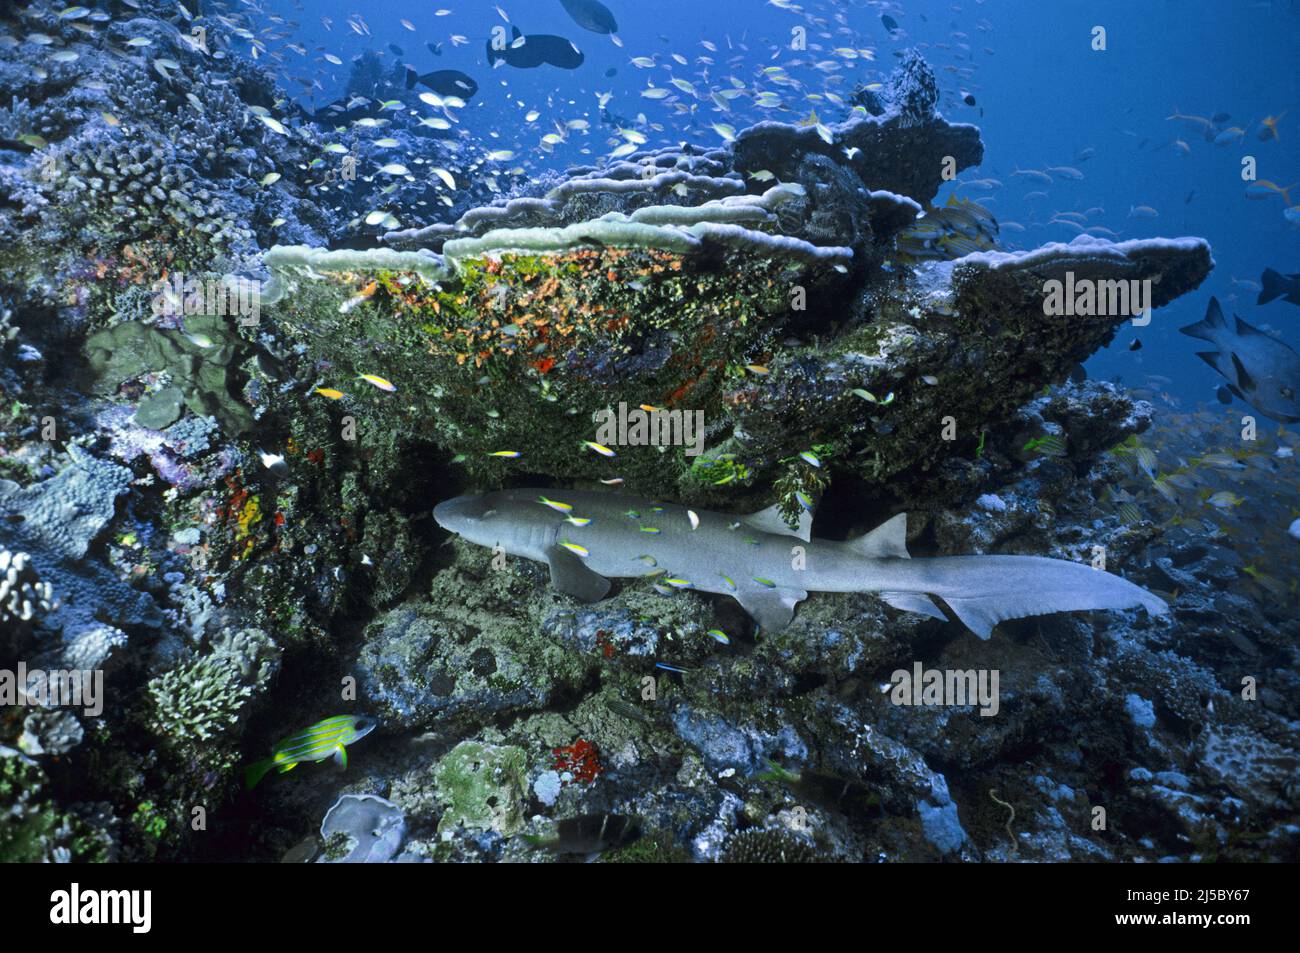 Dormant Tawny infirmière requin (Nebrius ferrugineus), dormant dans un récif de corail, Maldives, océan Indien, Asie Banque D'Images